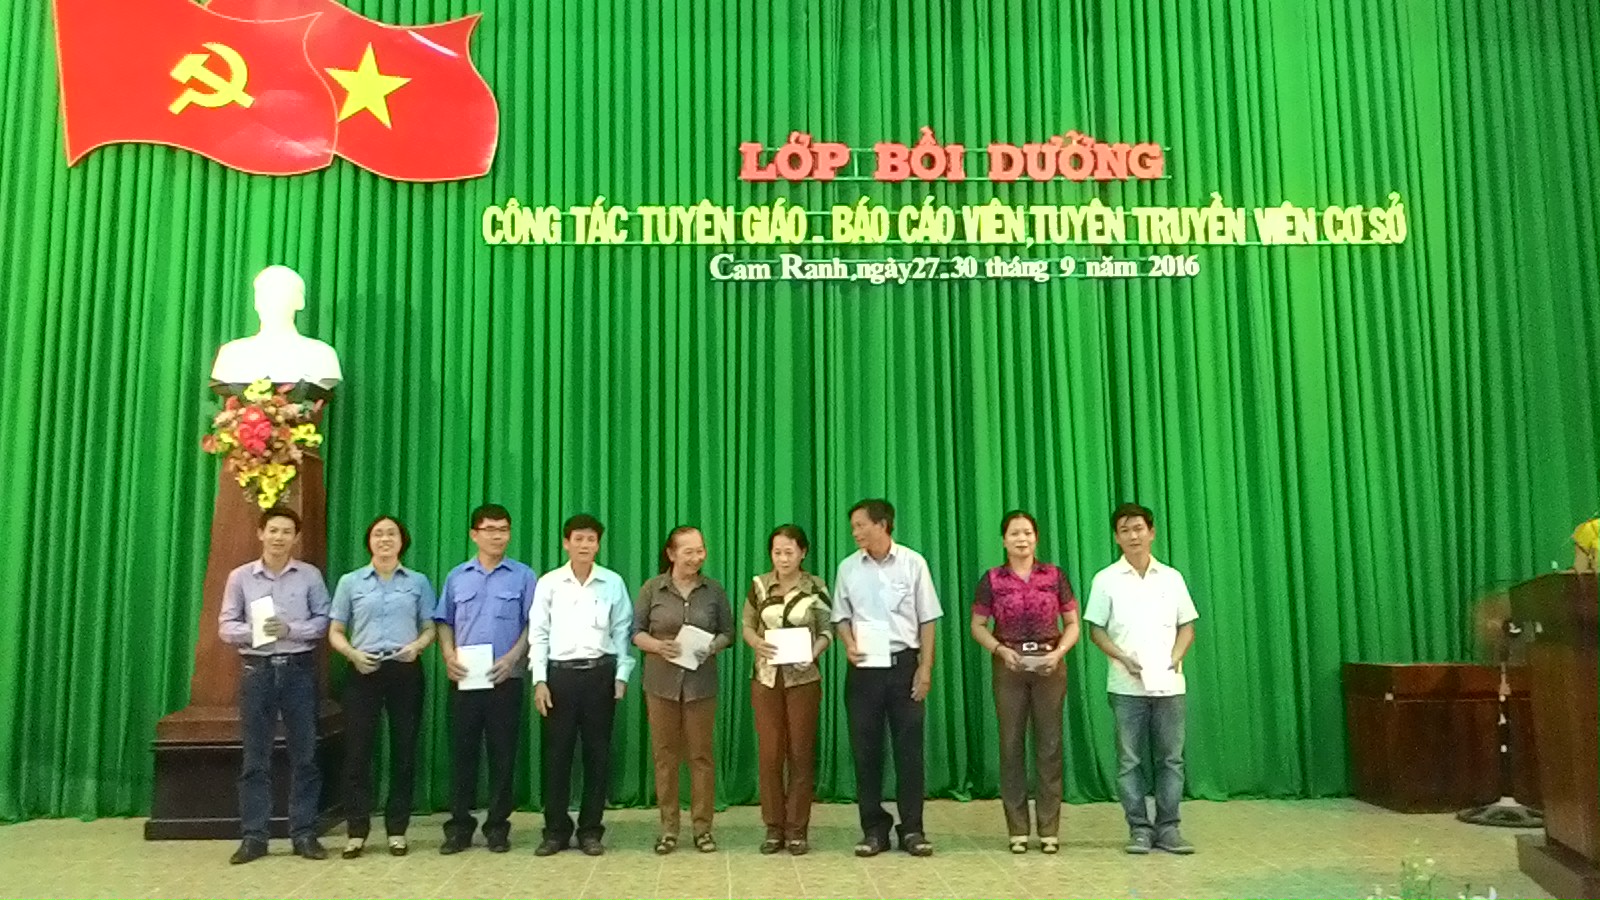 Cam Ranh: Tổ chức lớp bồi dưỡng nghiệp vụ công tác Tuyên giáo – Báo cáo viên, tuyên truyền viên cơ sở năm 2016.